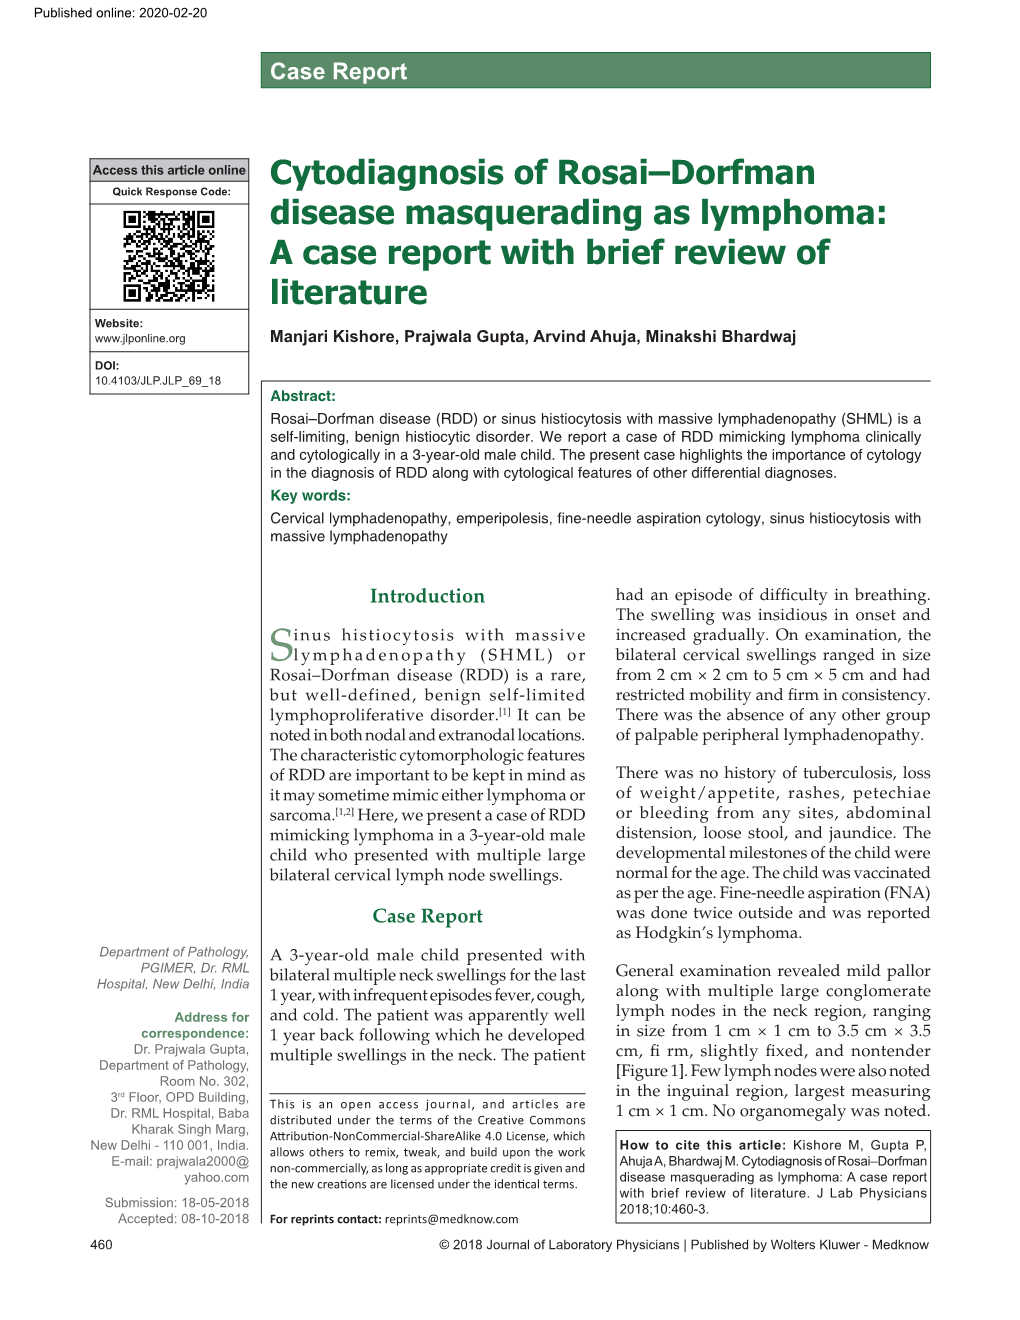 Cytodiagnosis of Rosai–Dorfman Disease Masquerading As Lymphoma